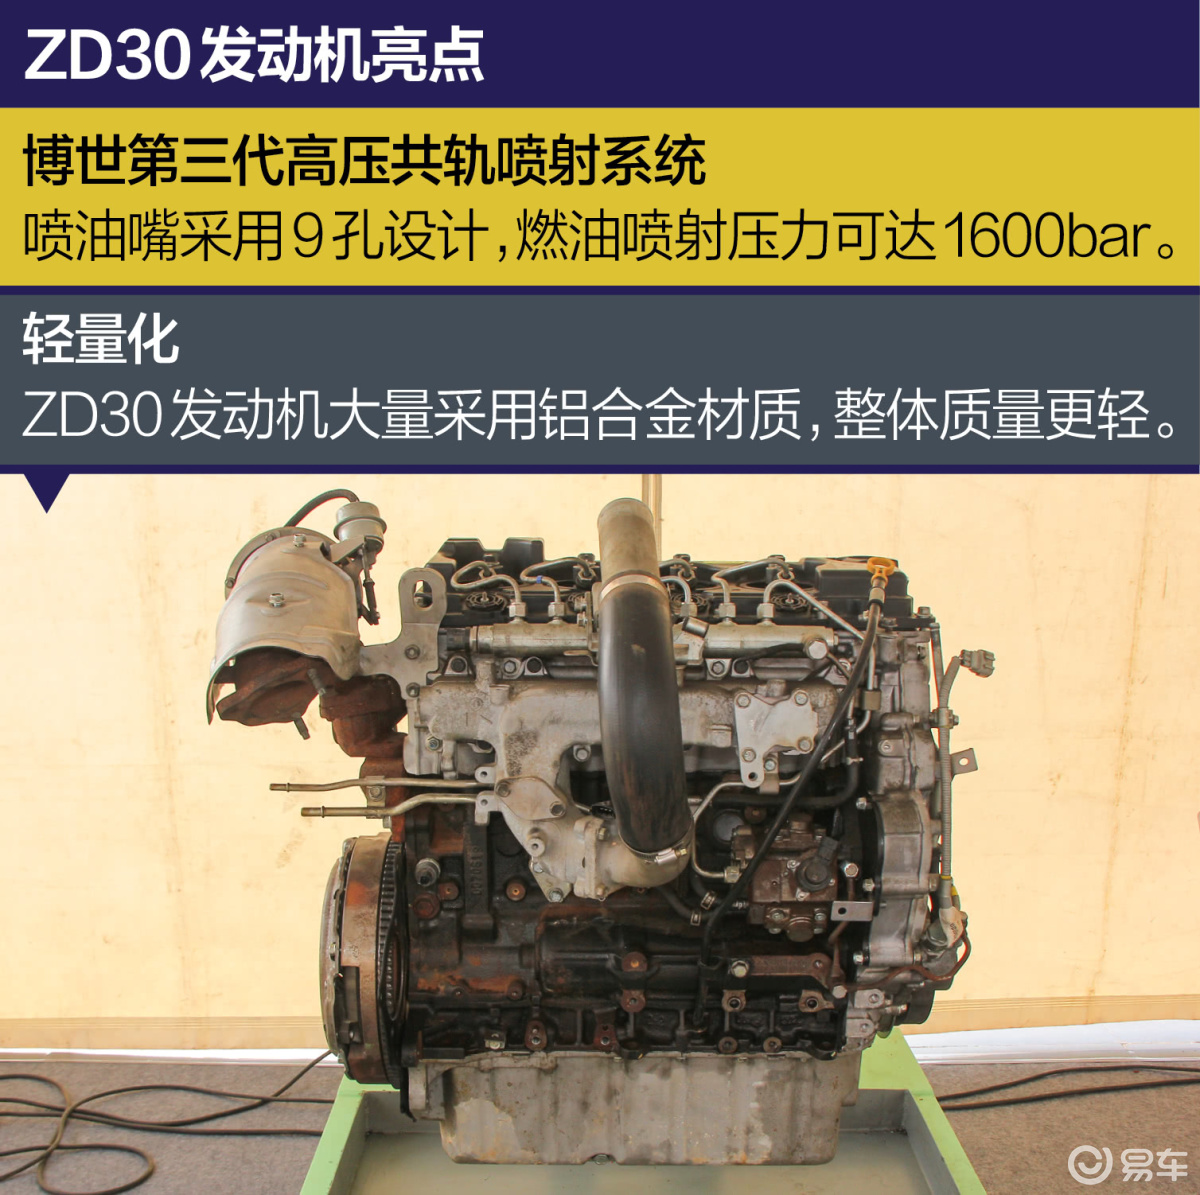 油耗低/可靠性高 东风御风ZD30发动机拆解